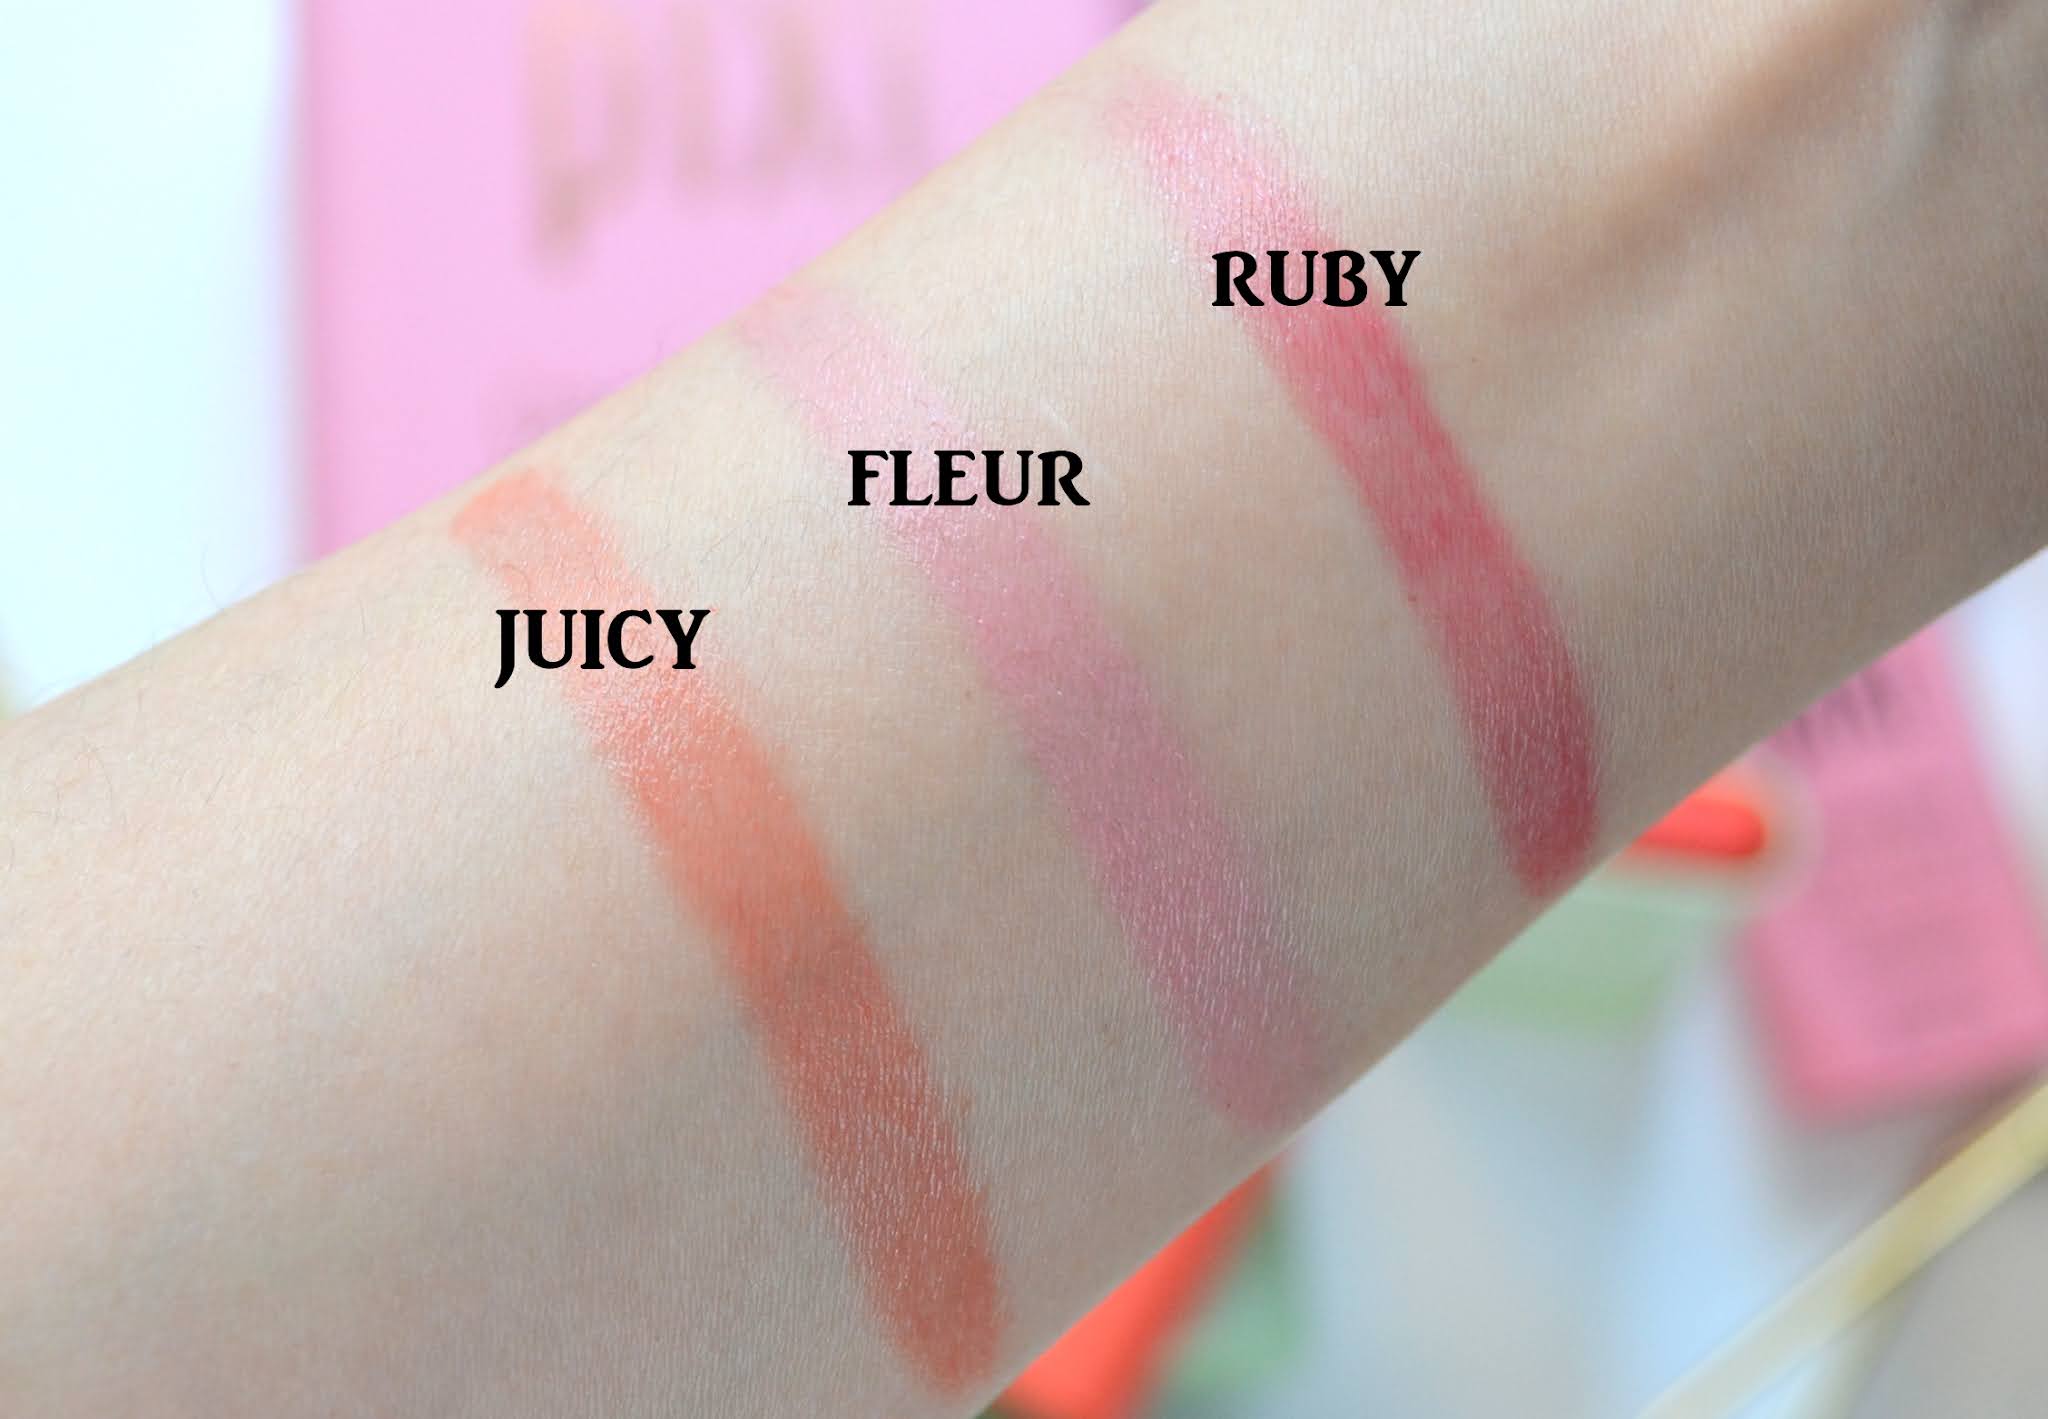 On-the-Glow Blush – Pixi Beauty